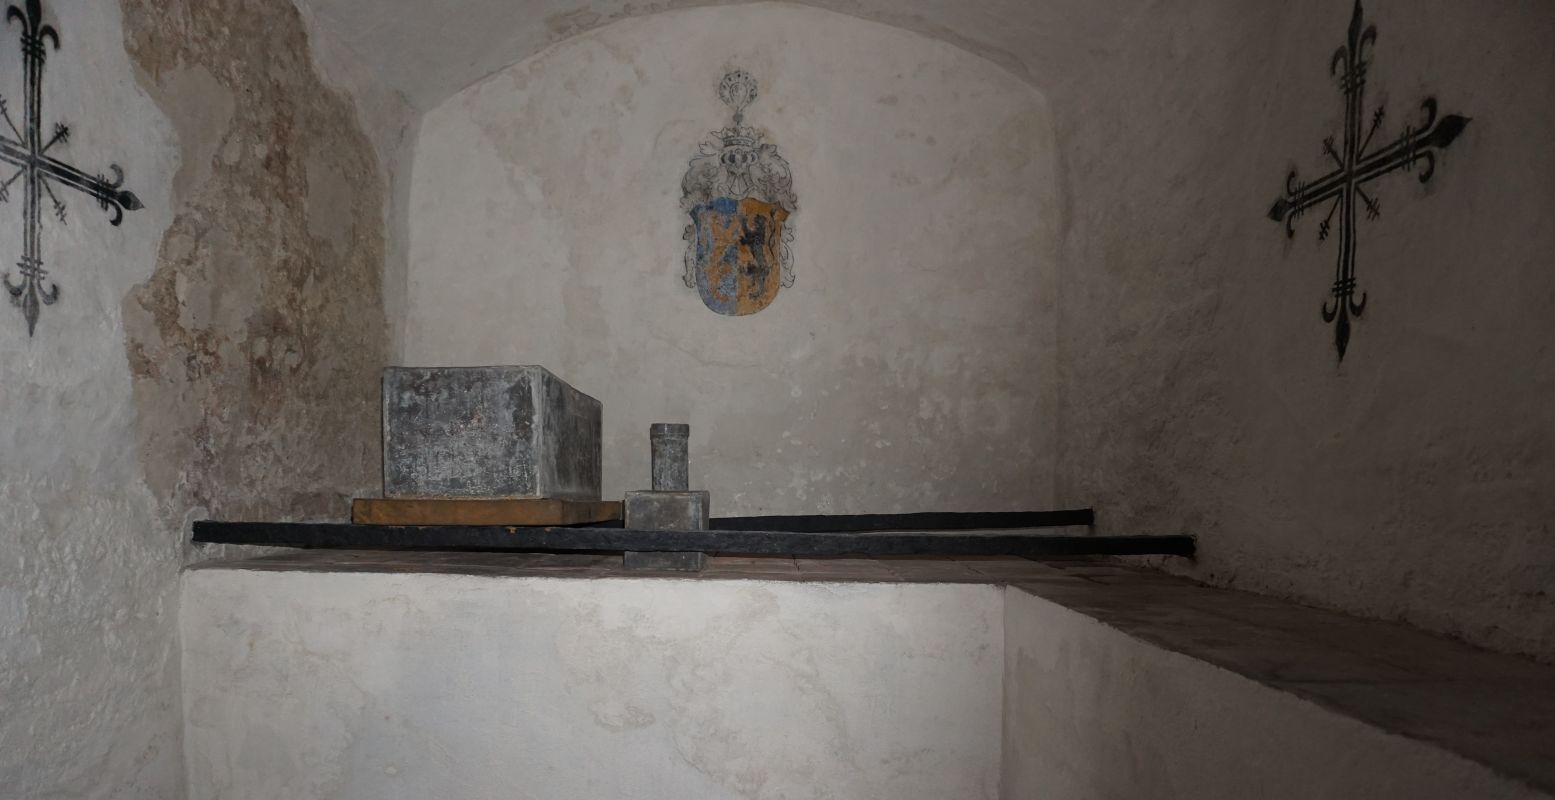 Gluren in de grafkelder van hertog Karel van Gelre, met zijn overblijfselen in een kistje onder het wapen van Gelre. Foto: DagjeWeg.NL